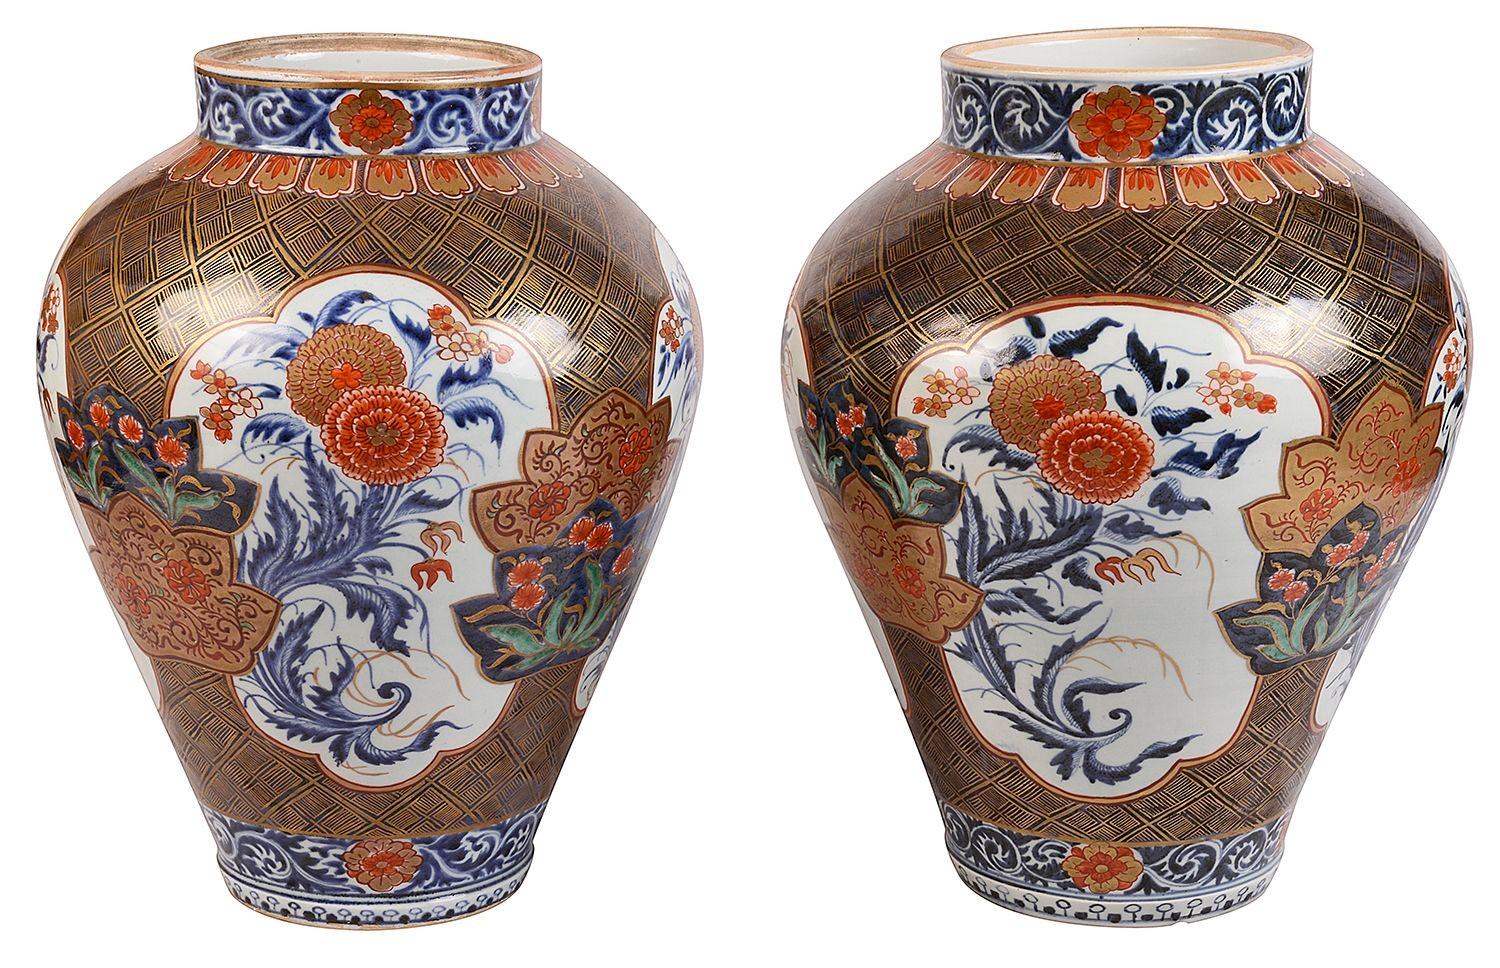 Ein wundervolles Paar japanischer Arita-Porzellan-Imari-Vasen aus dem späten 18. Jahrhundert, jede mit wundervoller, kräftiger Farbgebung, auf der Tafeln mit exotischen Blumen auf einem Grund mit klassischen Motiven abgebildet sind, um